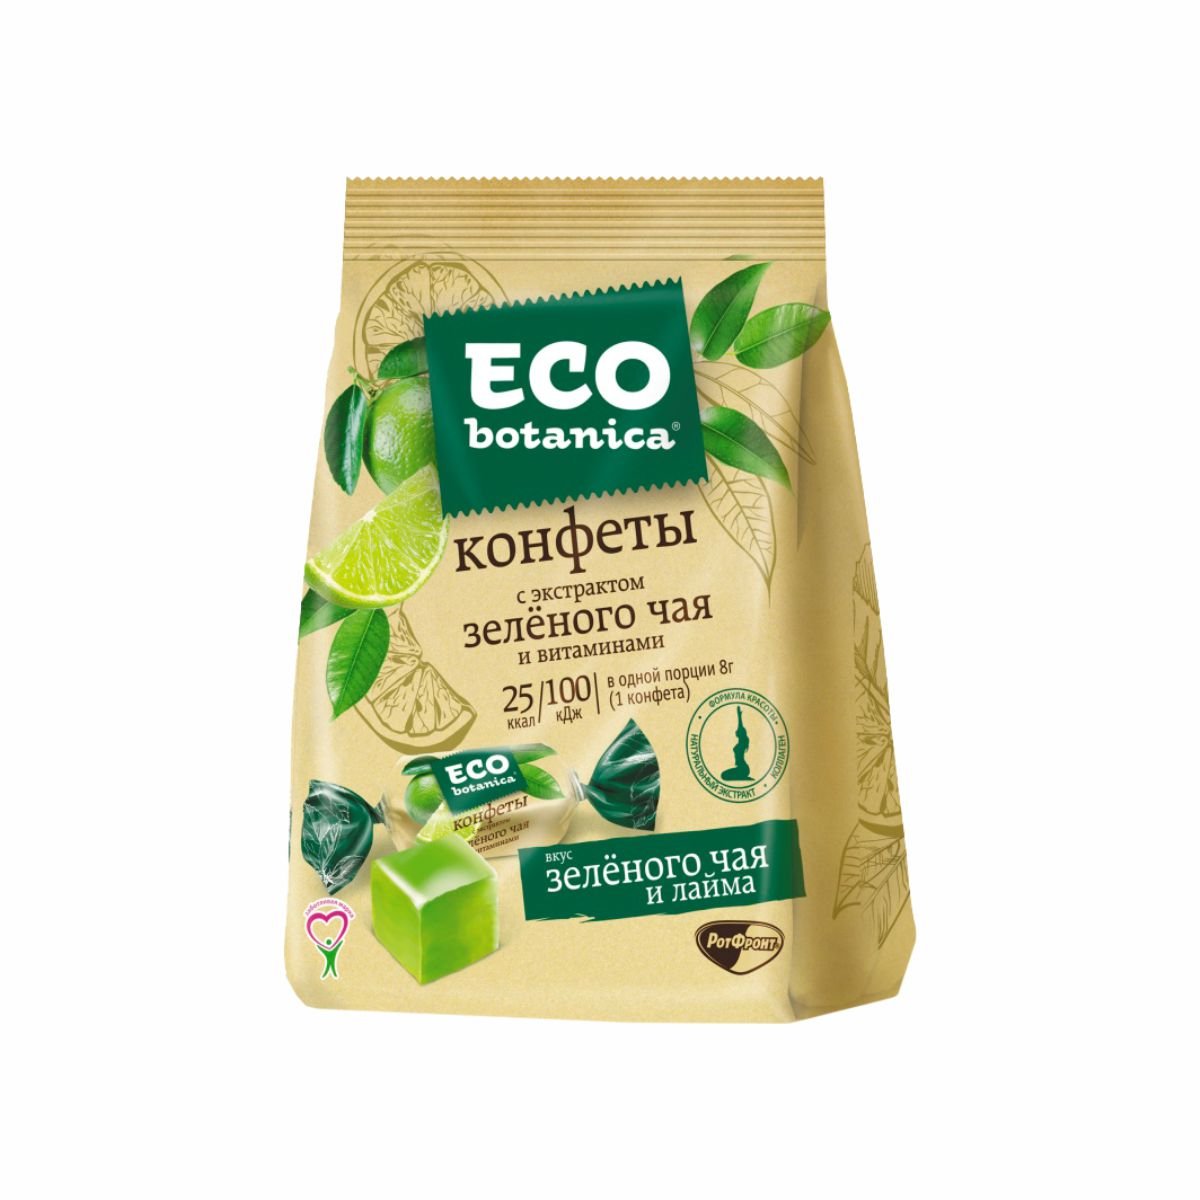 Конфеты Эко-ботаника с экстрактом зеленого чая и витаминами пл/уп 200г